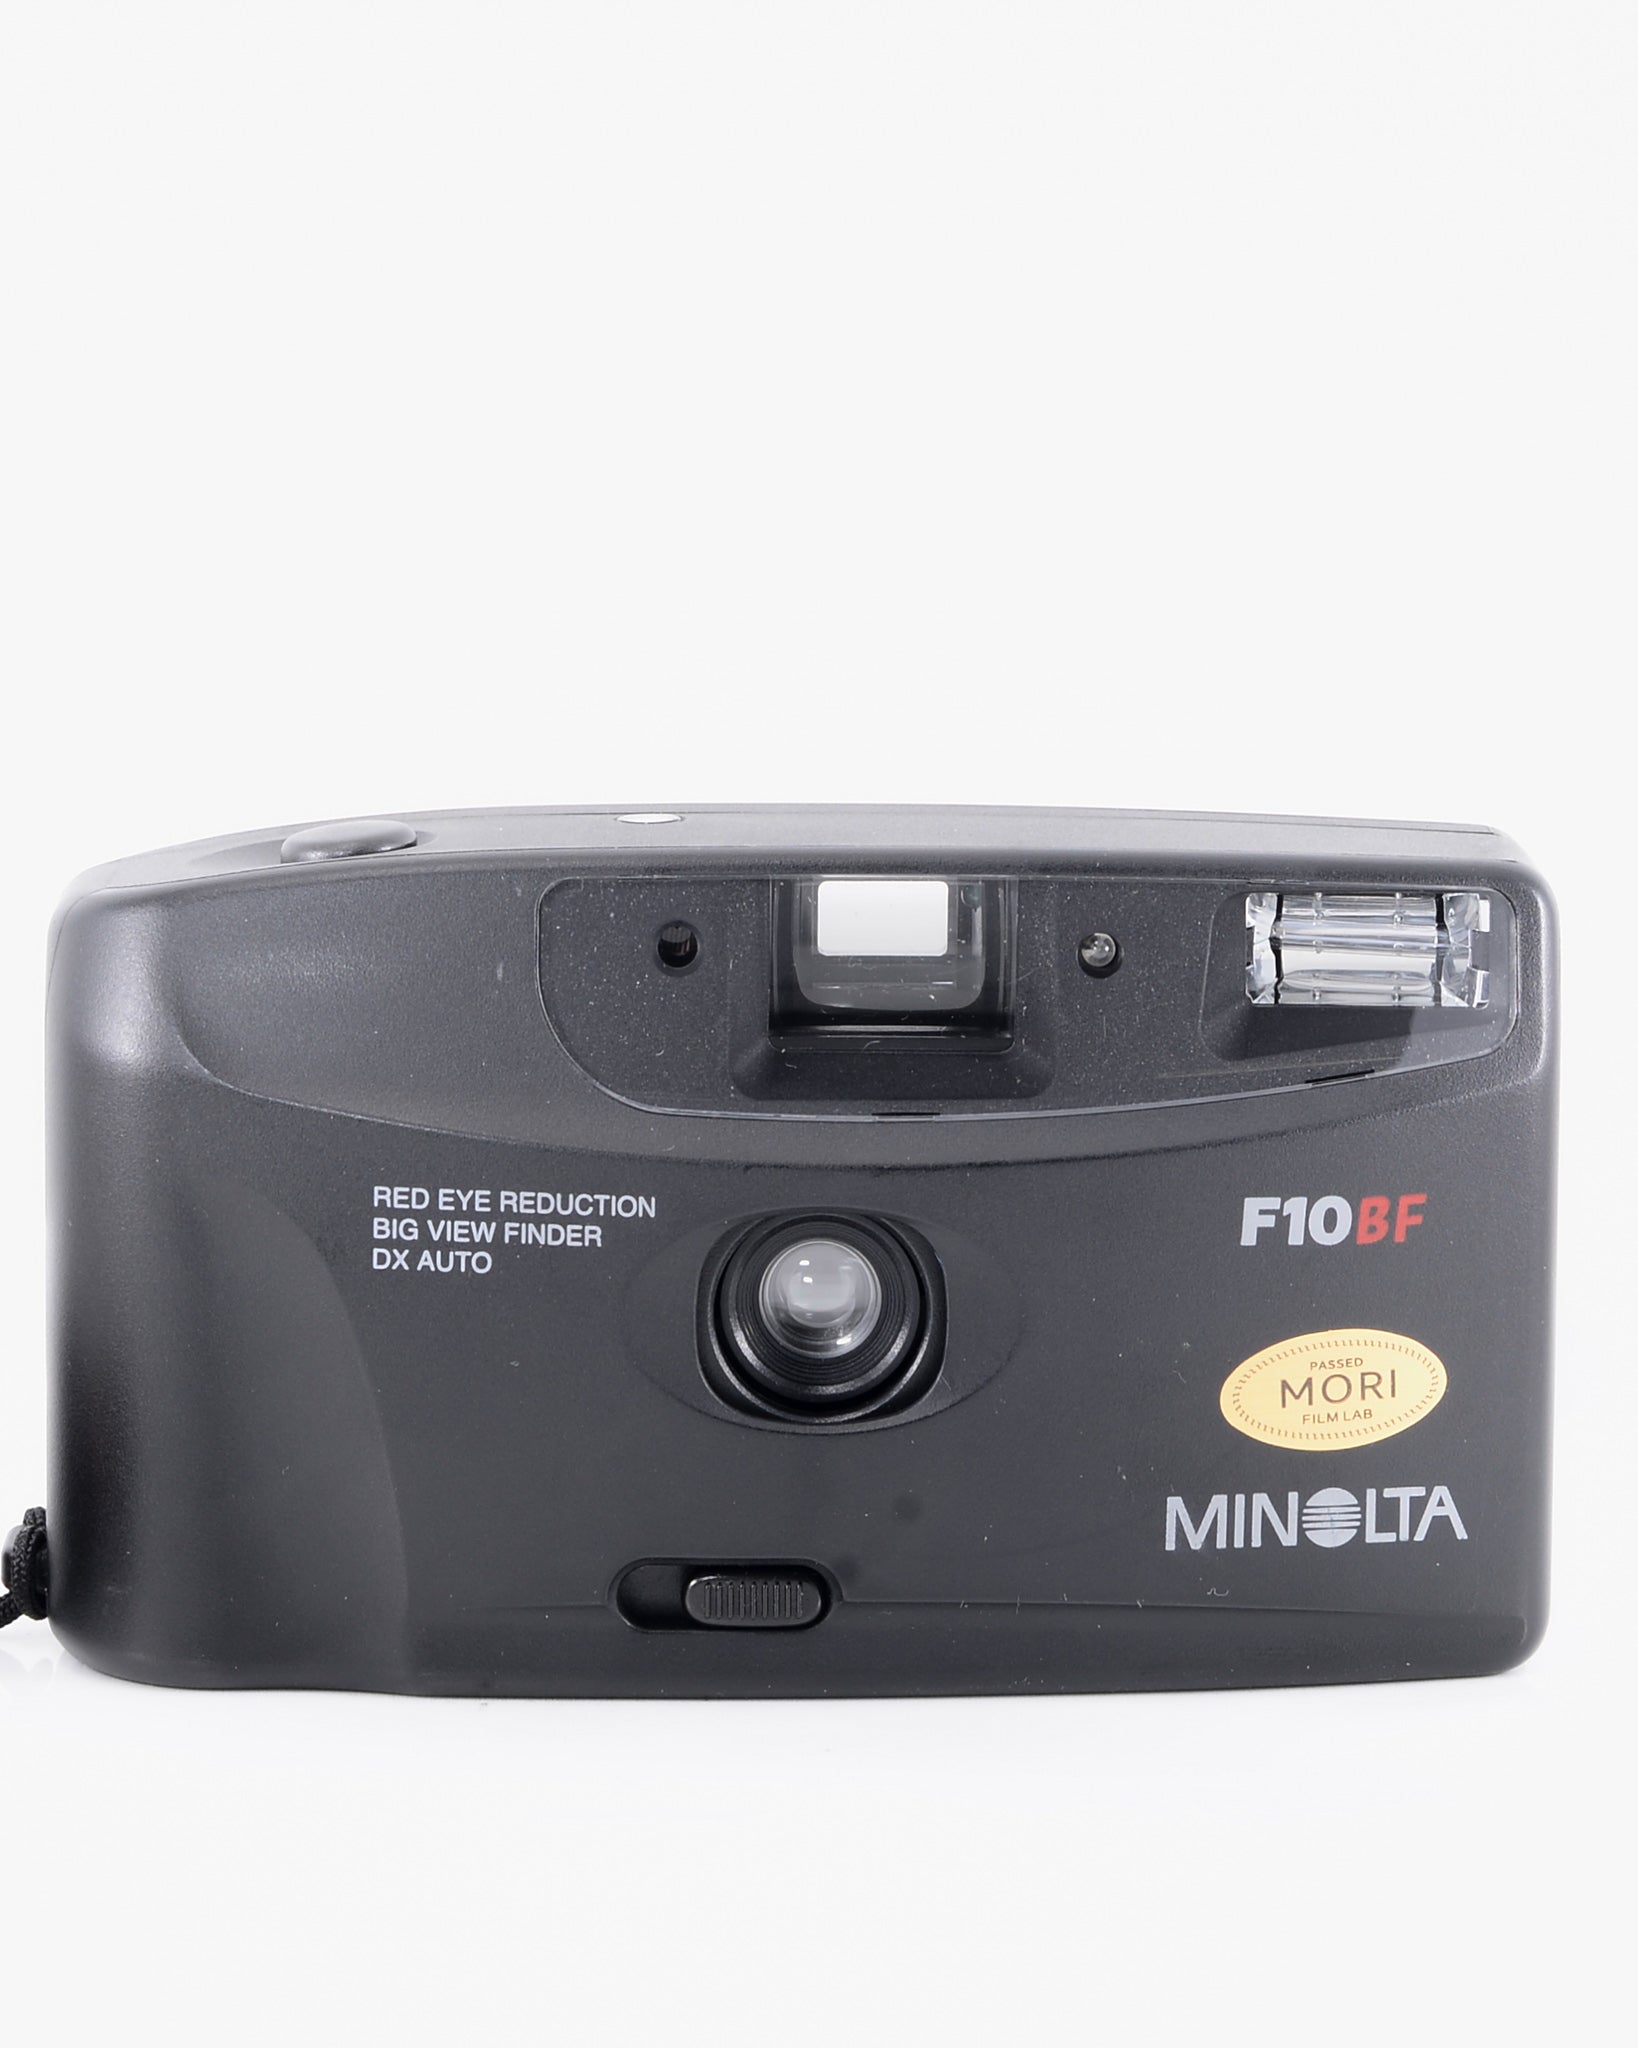 Minolta F10BF 35mm Point & Shoot Camera